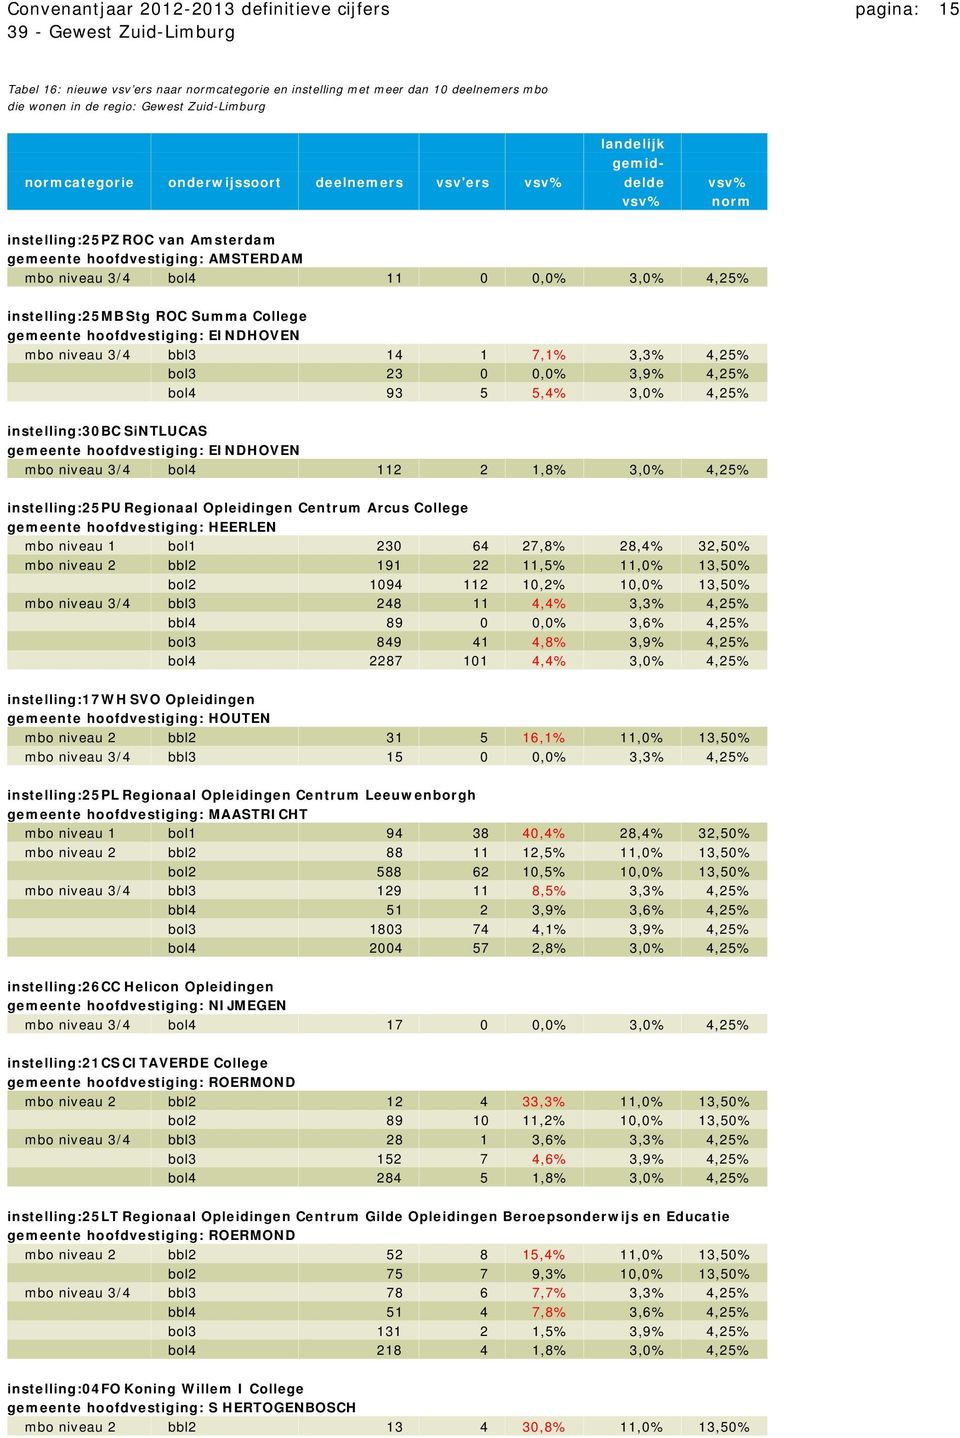 instelling:25mb Stg ROC Summa College gemeente hoofdvestiging: EINDHOVEN mbo niveau 3/4 bbl3 14 1 7,1% 3,3% 4,25% bol3 23 0 0,0% 3,9% 4,25% bol4 93 5 5,4% 3,0% 4,25% instelling:30bc SiNTLUCAS